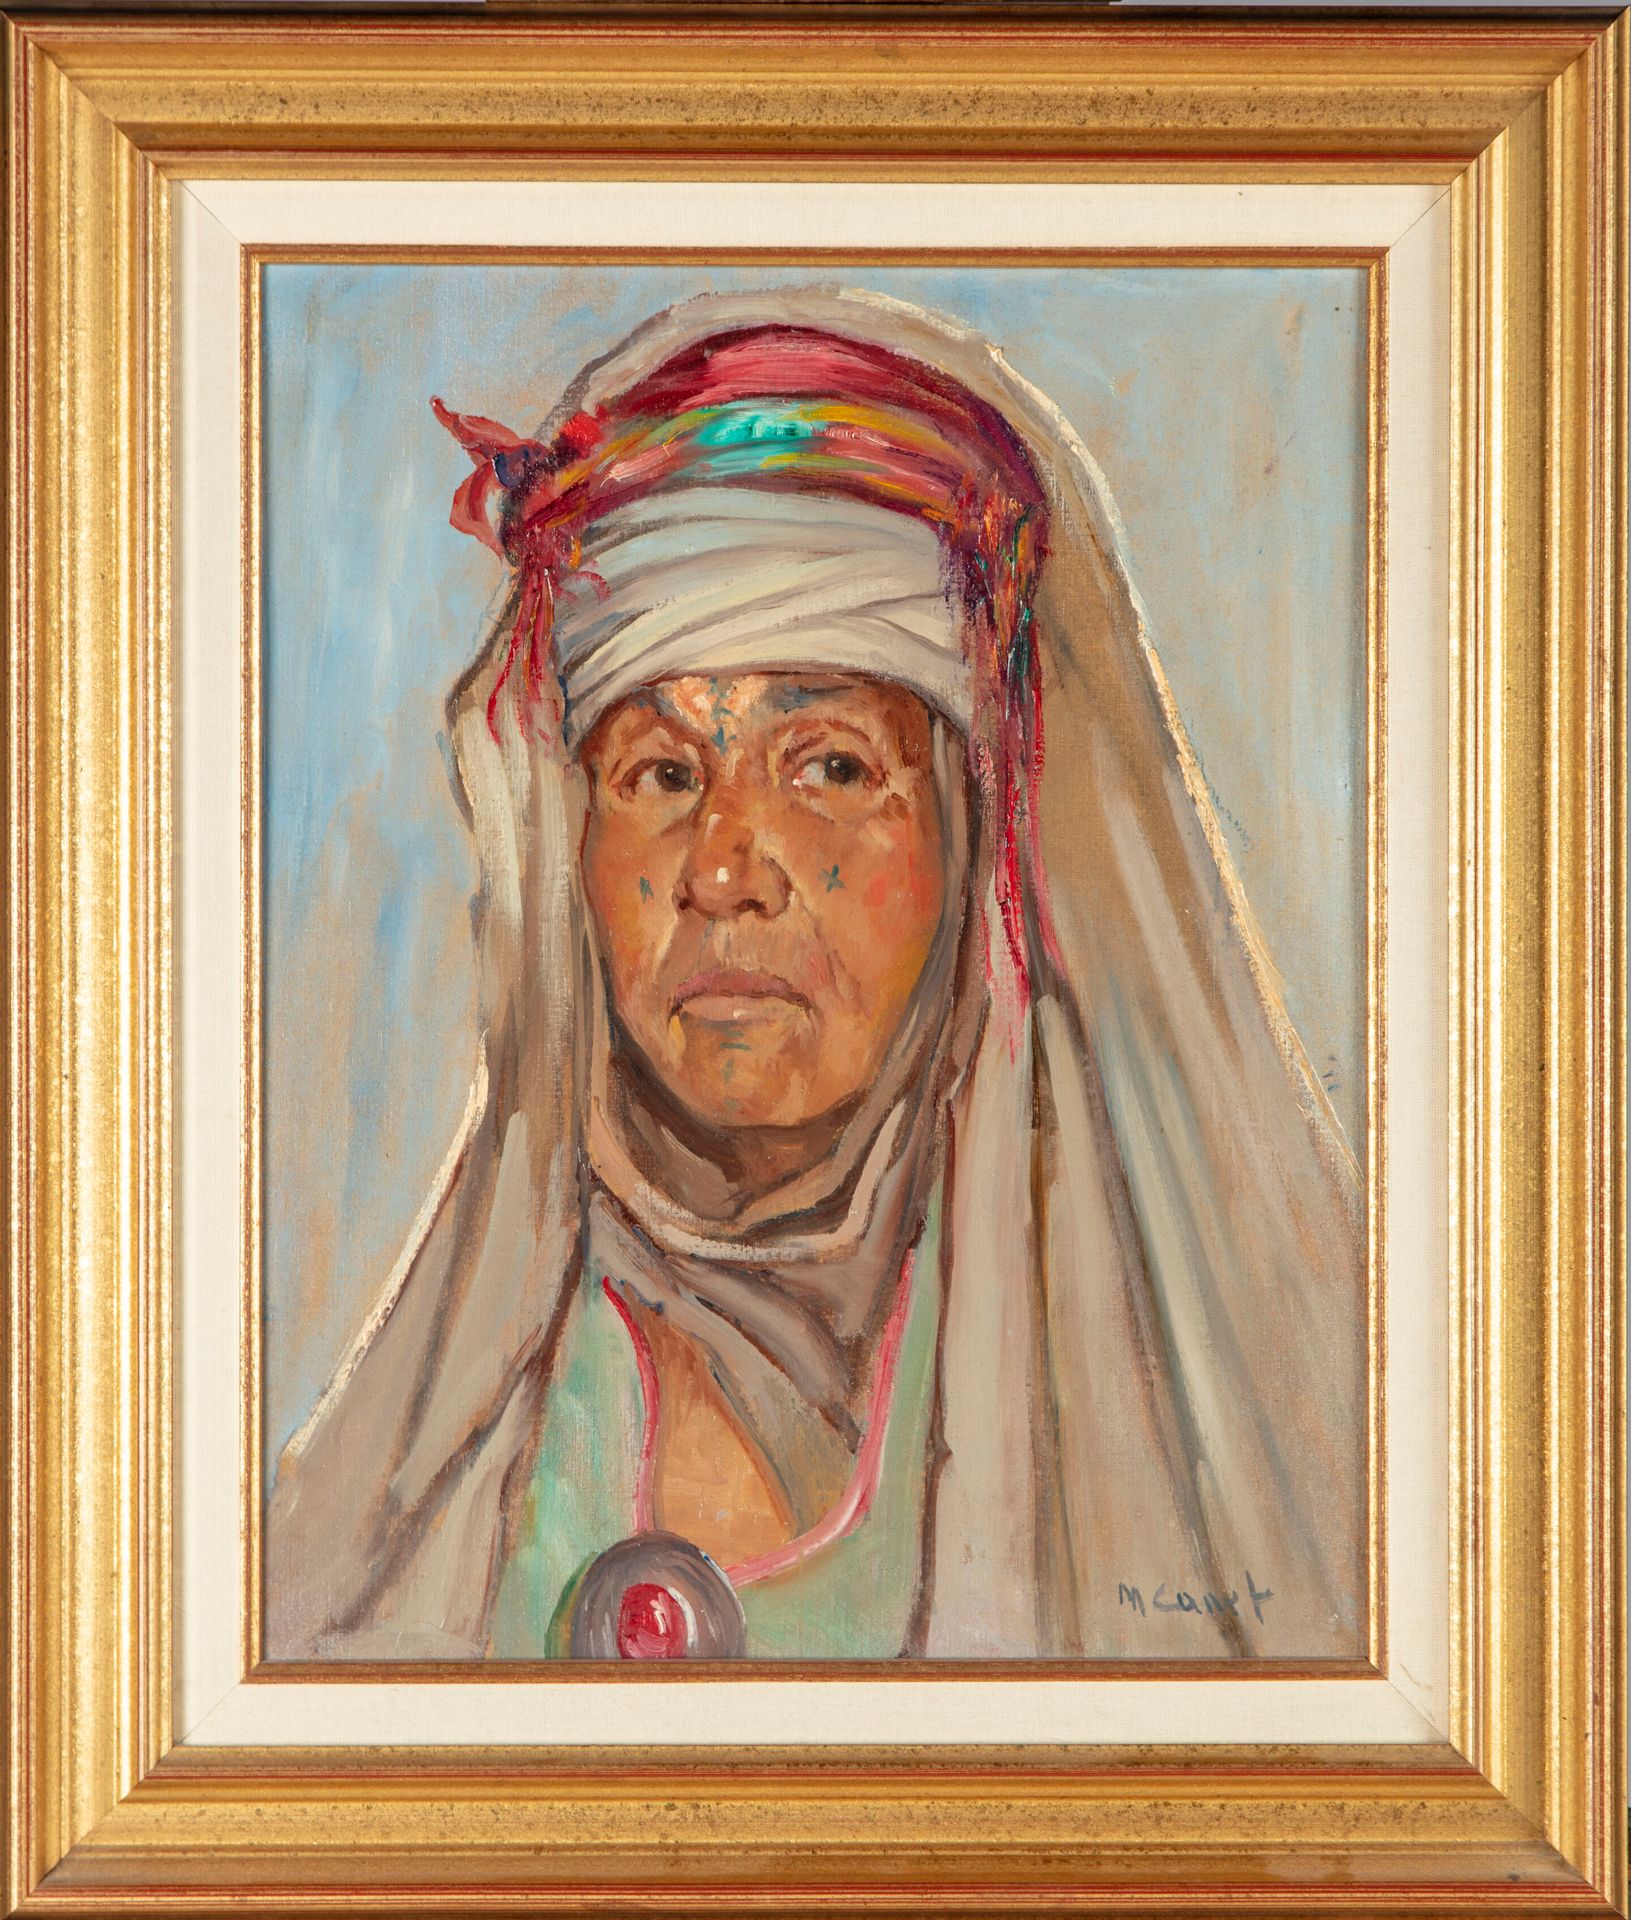 MARCEL CANET Marcel CANET (1875-1959)

Ritratto di donna berbera

Olio su tela m&hellip;